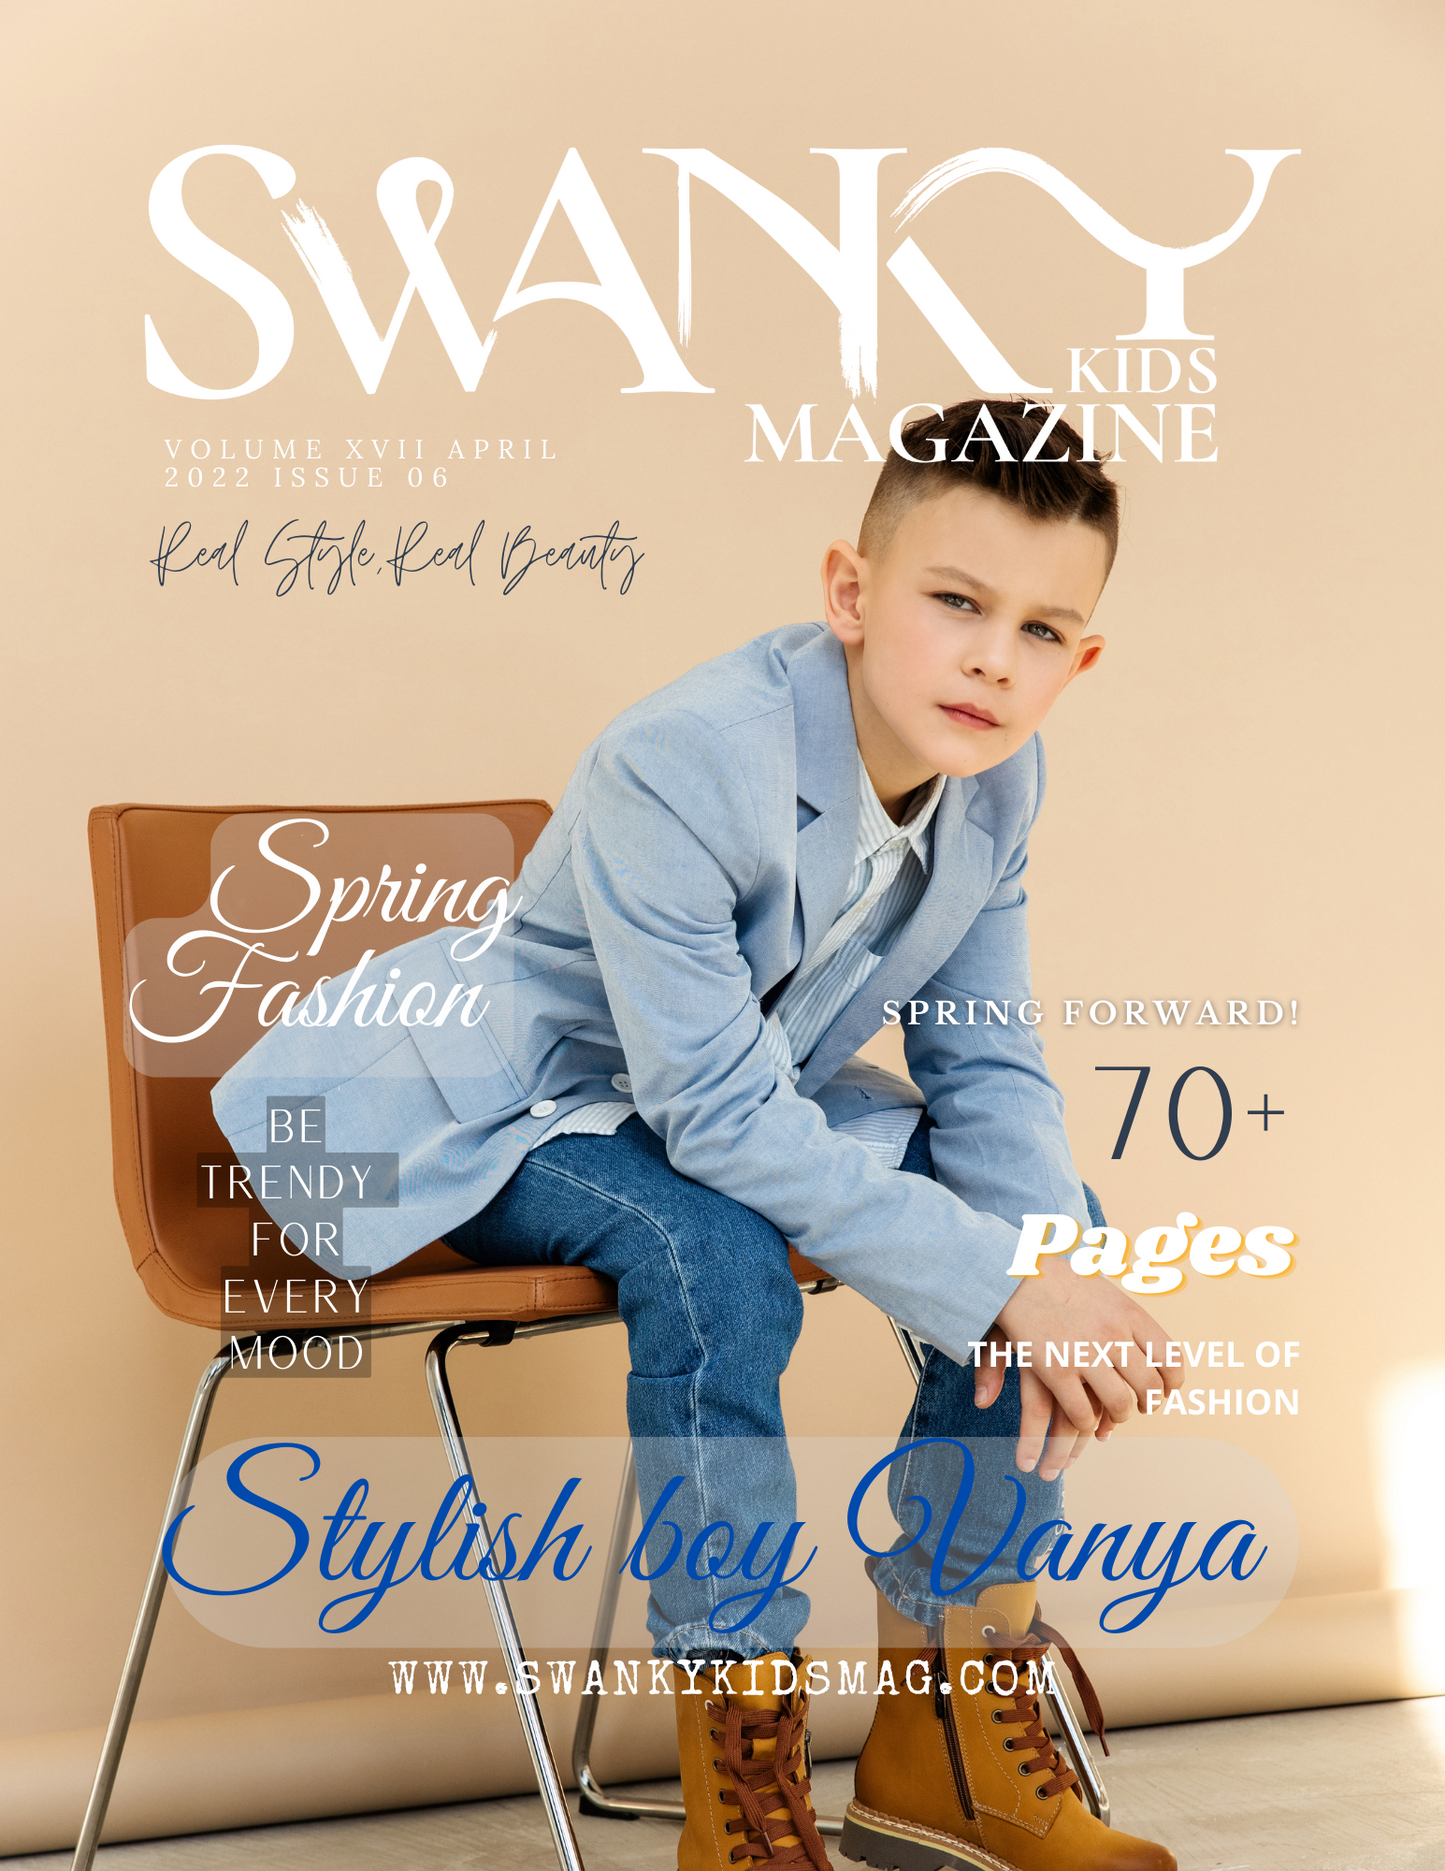 Swanky Kids Magazine APRIL 2022 VOL XVII Issue 6